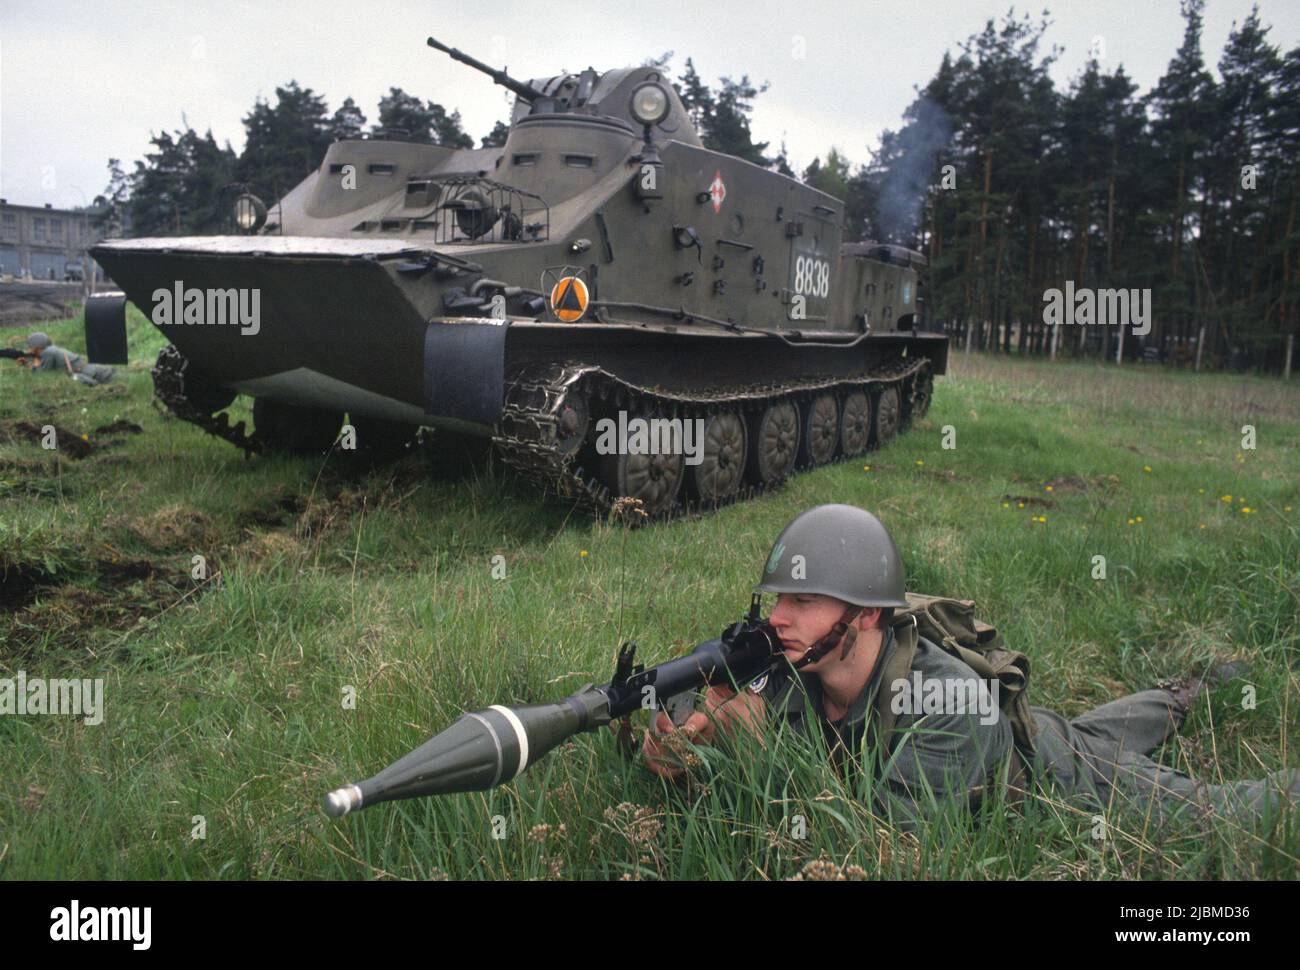 - Polnische Armee, amphibische Infanteriedivision von Lebork, gepanzertes Fahrzeug OT 72 C - Forze Armate Polacche, divisione fanteria anfibia di Lebork. Veicolo corazzati OT 72 C Stockfoto